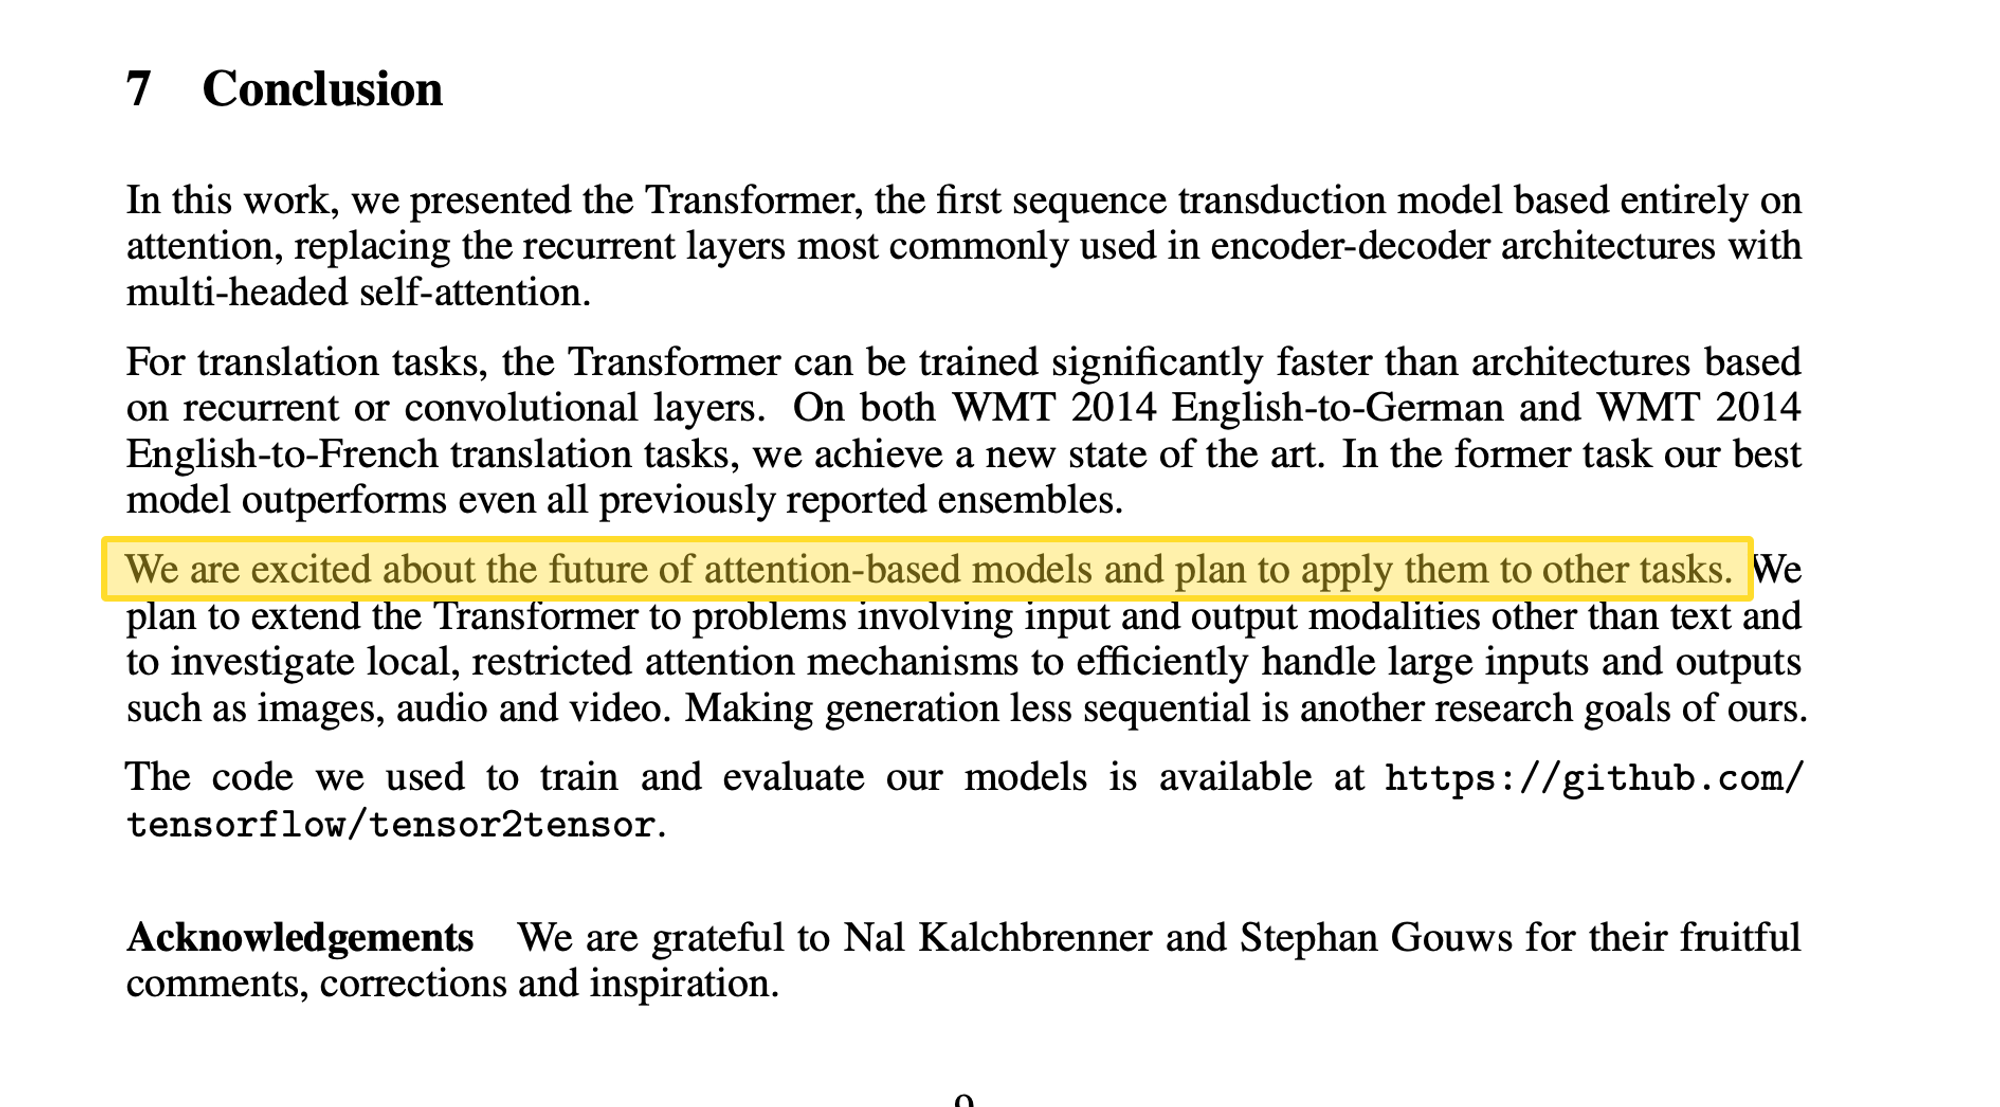 图 2. Transformer 提出者比较谨慎地写到计划将模型拓展到其他任务